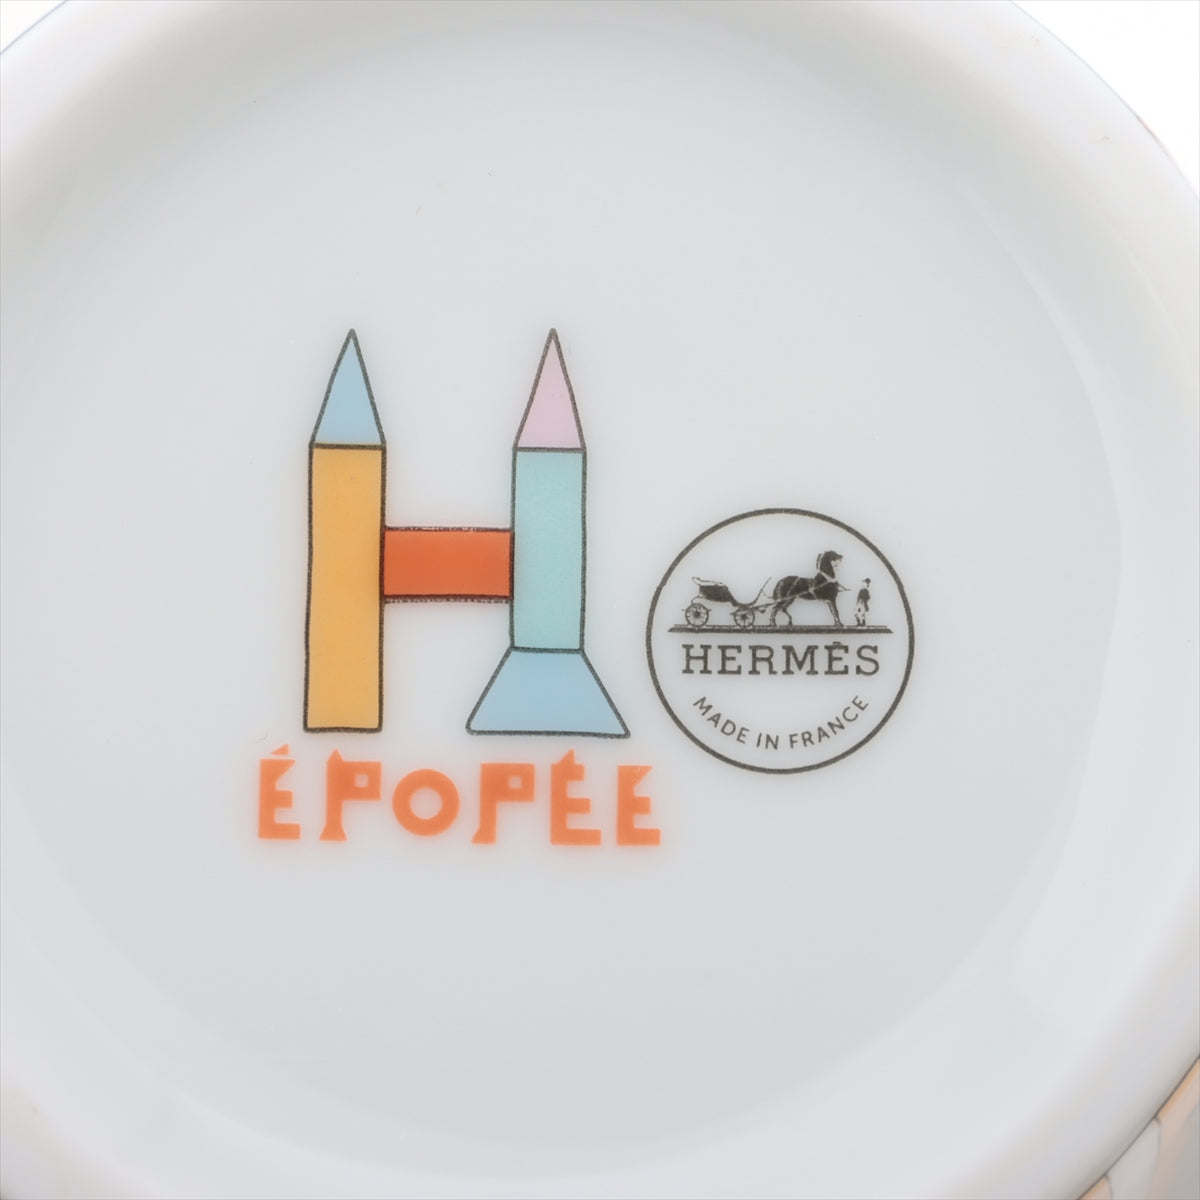 エルメス エポペ マグカップ 陶器 マルチカラー